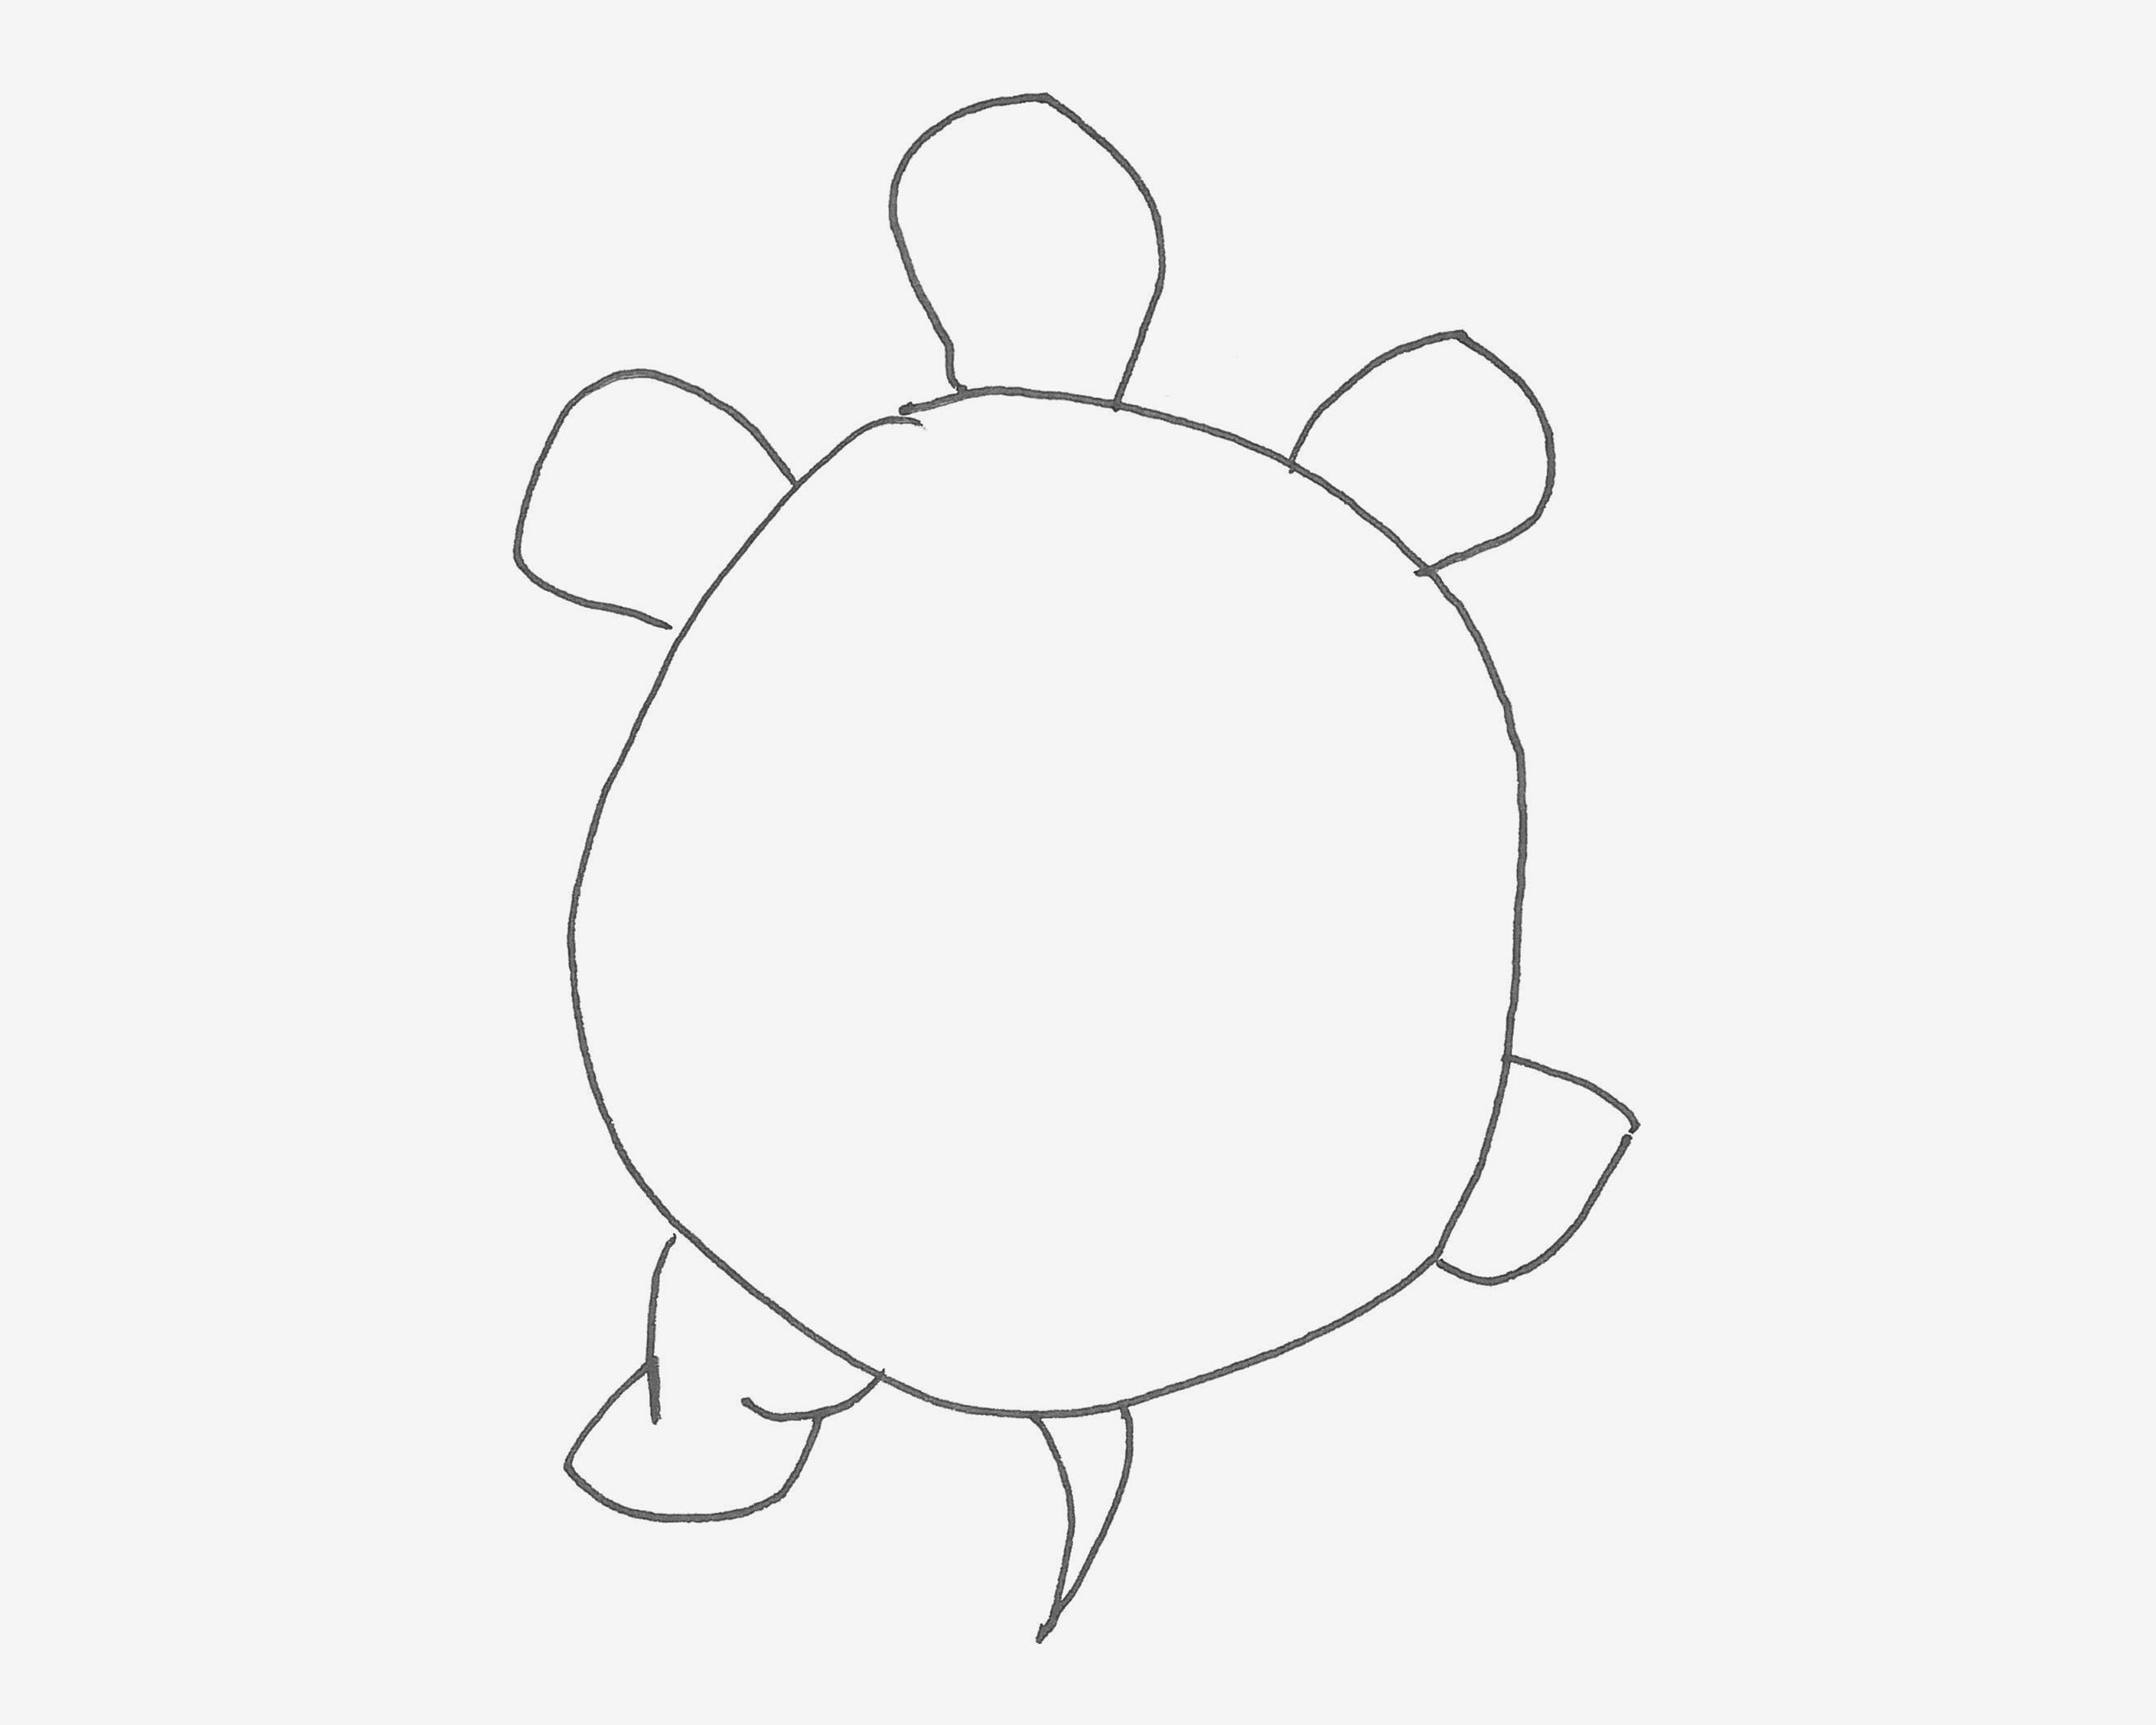 少儿3-6岁画画 可爱简笔画乌龟怎么画详细步骤